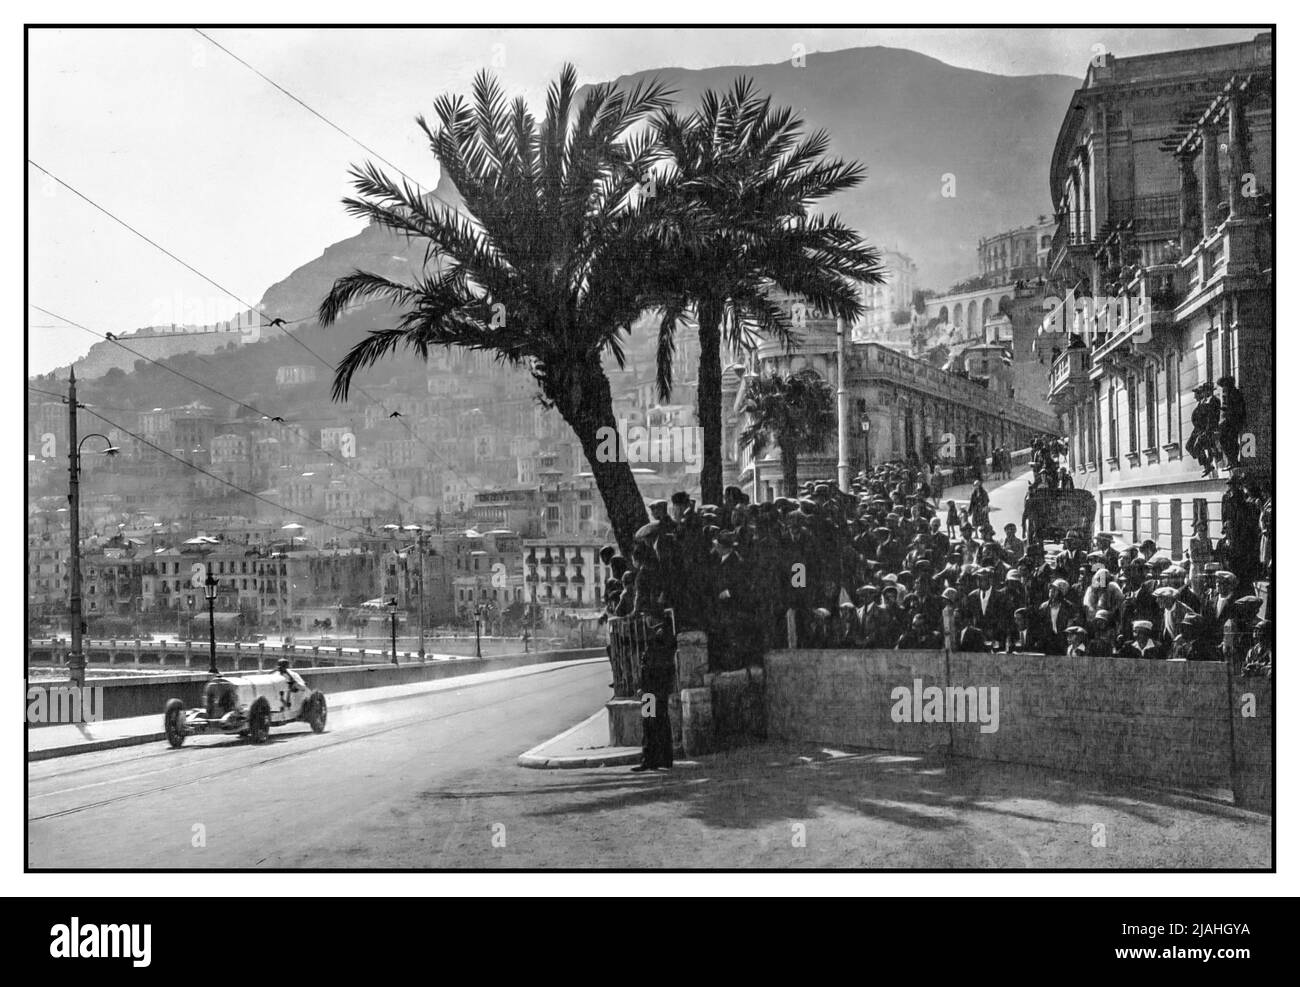 1929 Gran Premio di Monaco il primo a tenersi a Monaco con Rudolf Caracciola in una Mercedes-Benz SSK (W06) gara numero 34 un roadster costruito dal costruttore tedesco di automobili Mercedes-Benz tra il 1928 e il 1932. Il nome è un'abbreviazione di Super Sport Kurz, tedesco per 'Super Sport Short', in quanto è stato uno sviluppo a passo corto della Mercedes-Benz Modell S. l'estrema prestazione della SSK e numerosi successi competitivi la hanno resa una delle vetture sportive più apprezzate della sua epoca. Rudolf Caracciola è arrivato terzo dopo aver iniziato il 15th in griglia una posizione data da un ballottaggio. Foto Stock